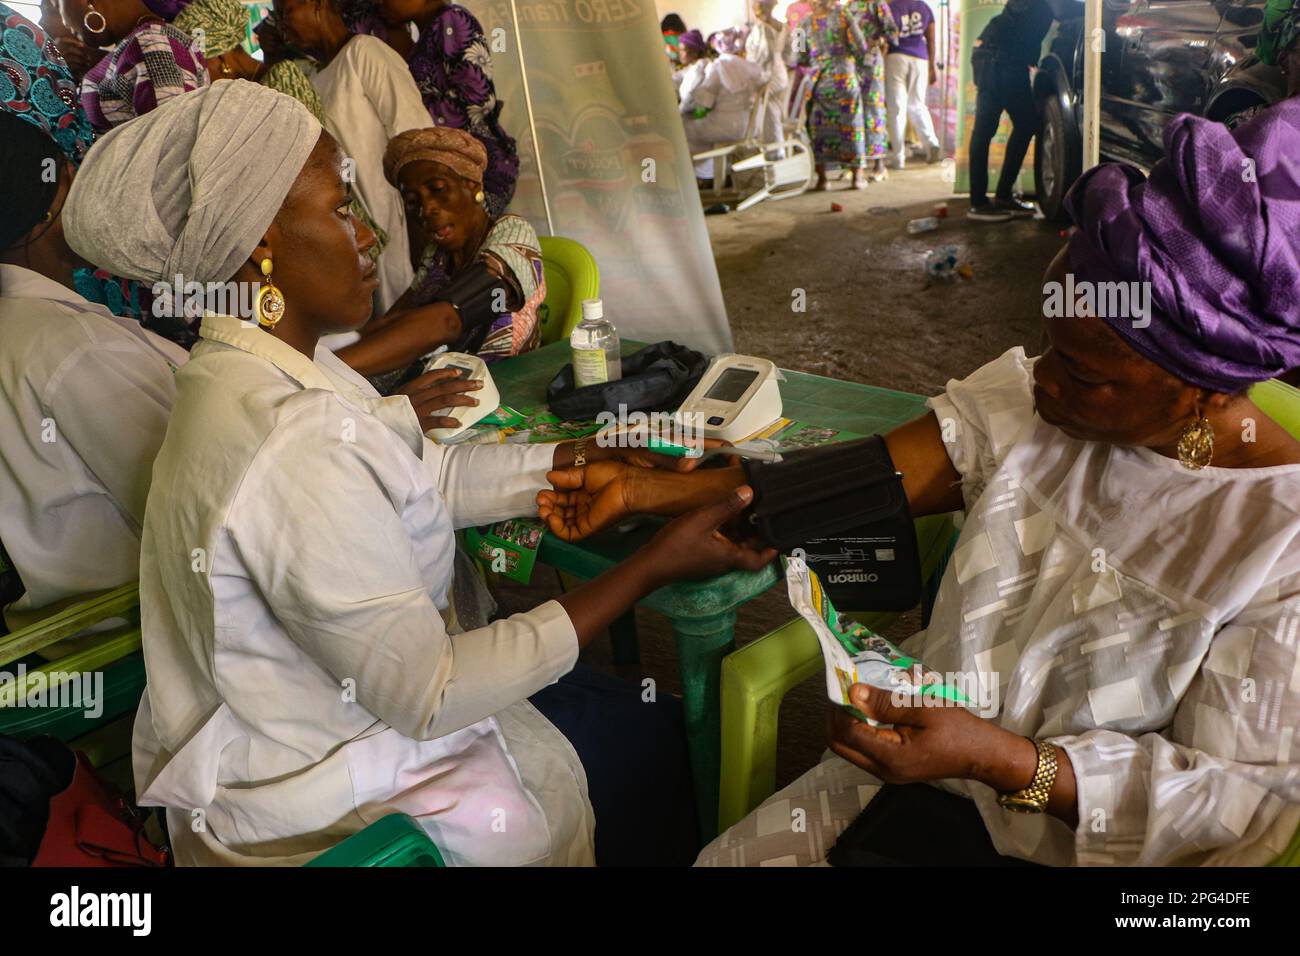 El personal médico atiende a la mujer durante un examen médico gratuito en conmemoración del Día Internacional de la Mujer en el Mobolaji Johnson Arena en Lagos, Nigeria. Foto de stock